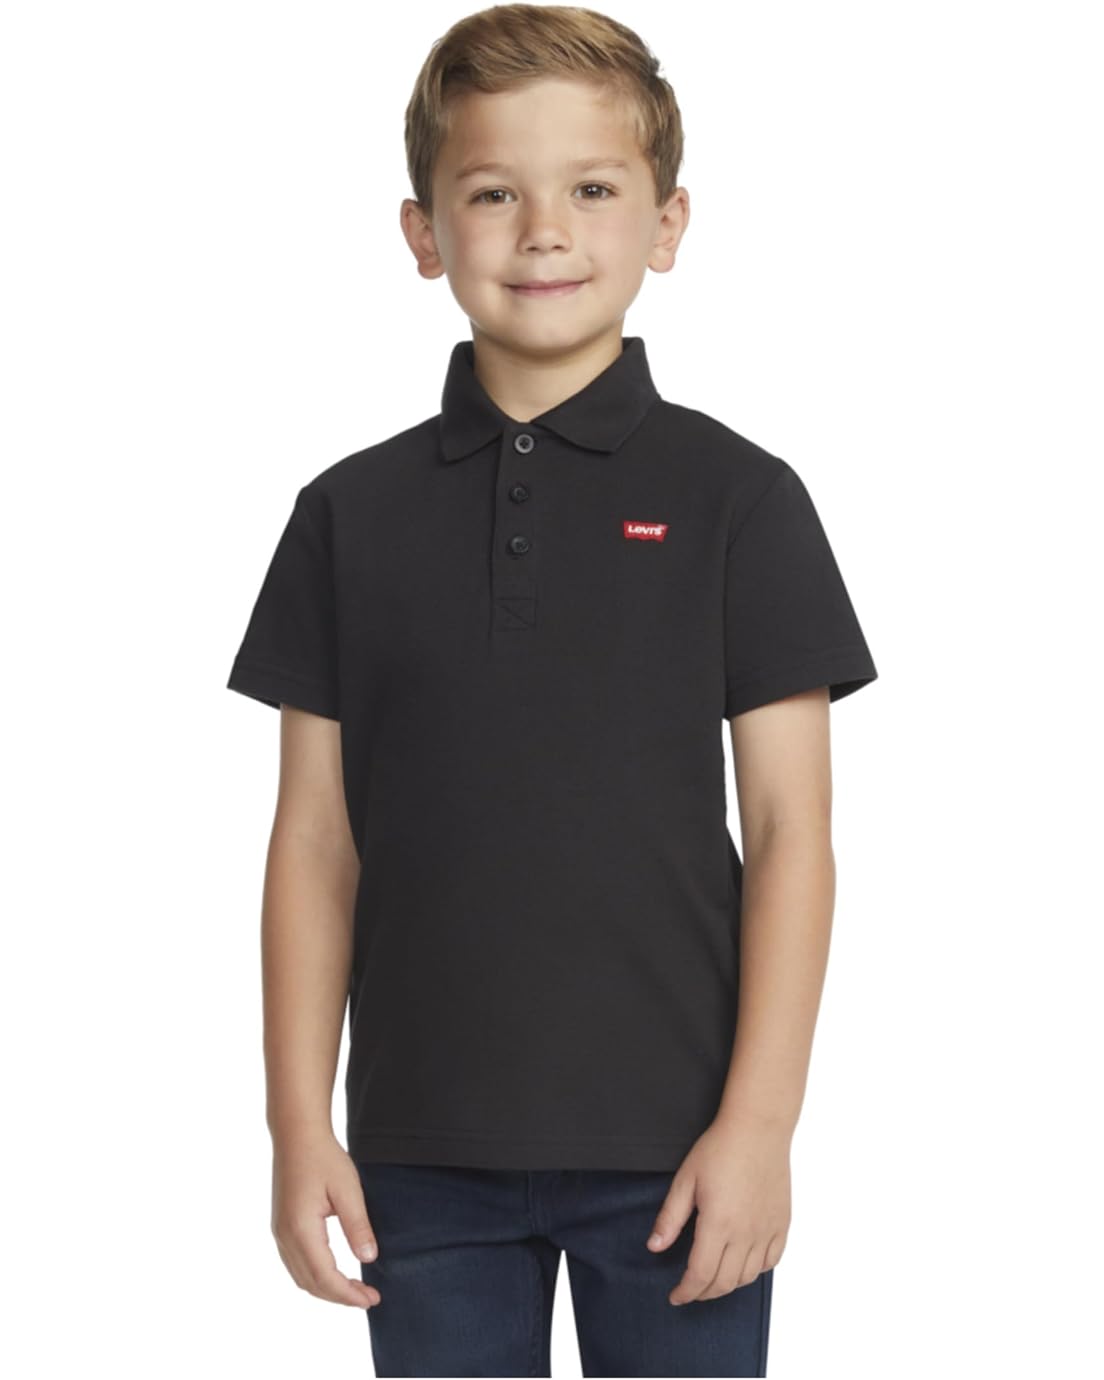 Levis Kids Short Sleeve Polo Shirt (Little Kids)